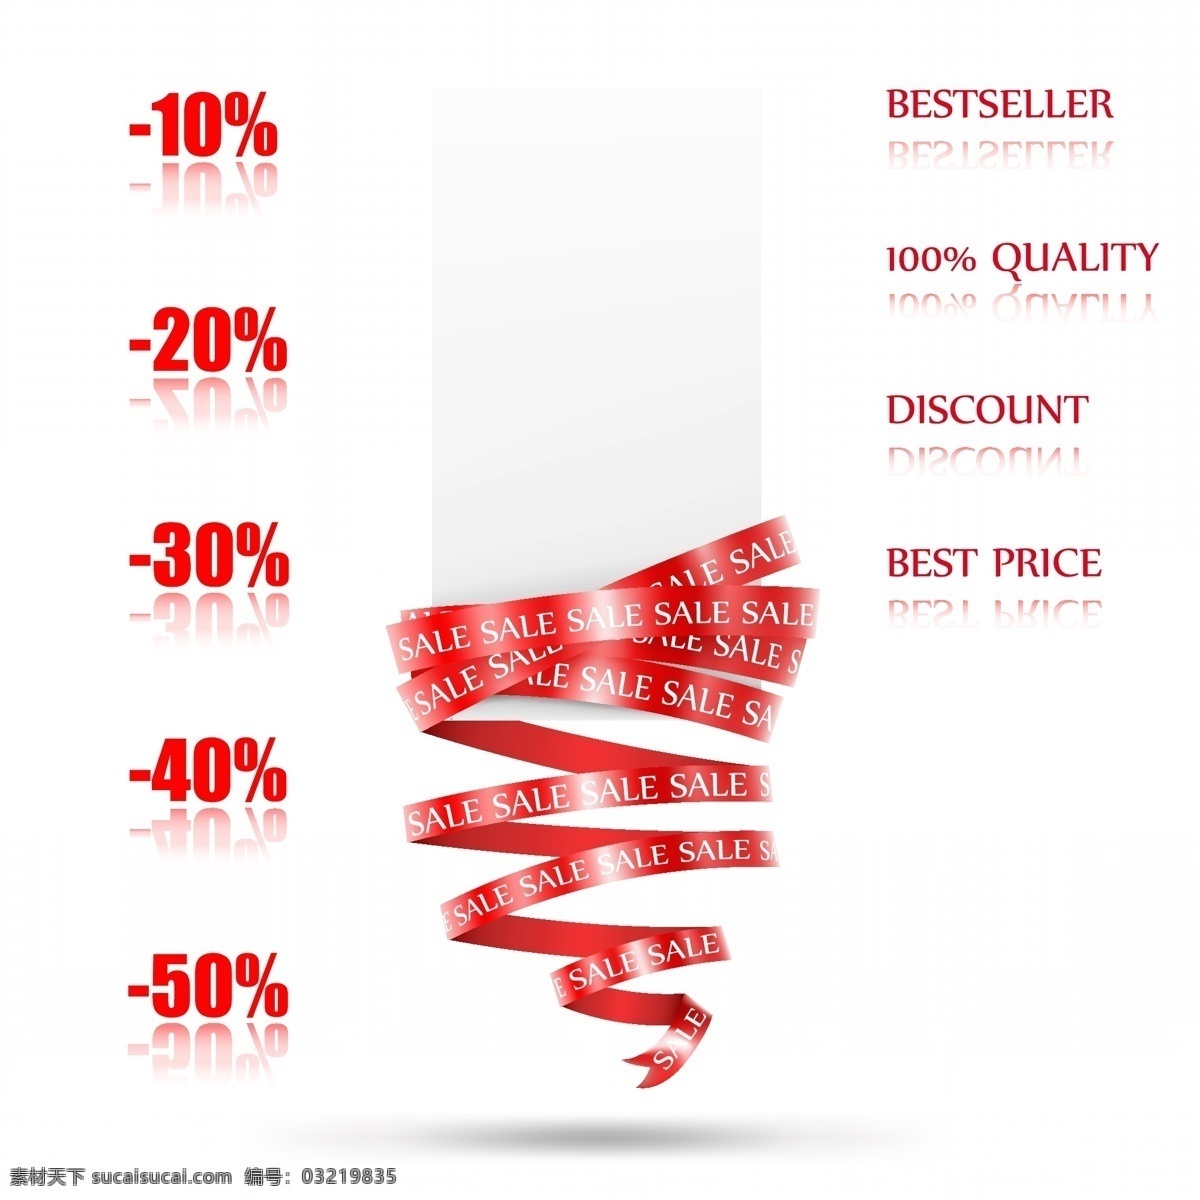 红丝 带 销售 元素 矢量 百分比 红丝带 价格 精致 折扣 beseseller 销售的元素 矢量图 其他矢量图